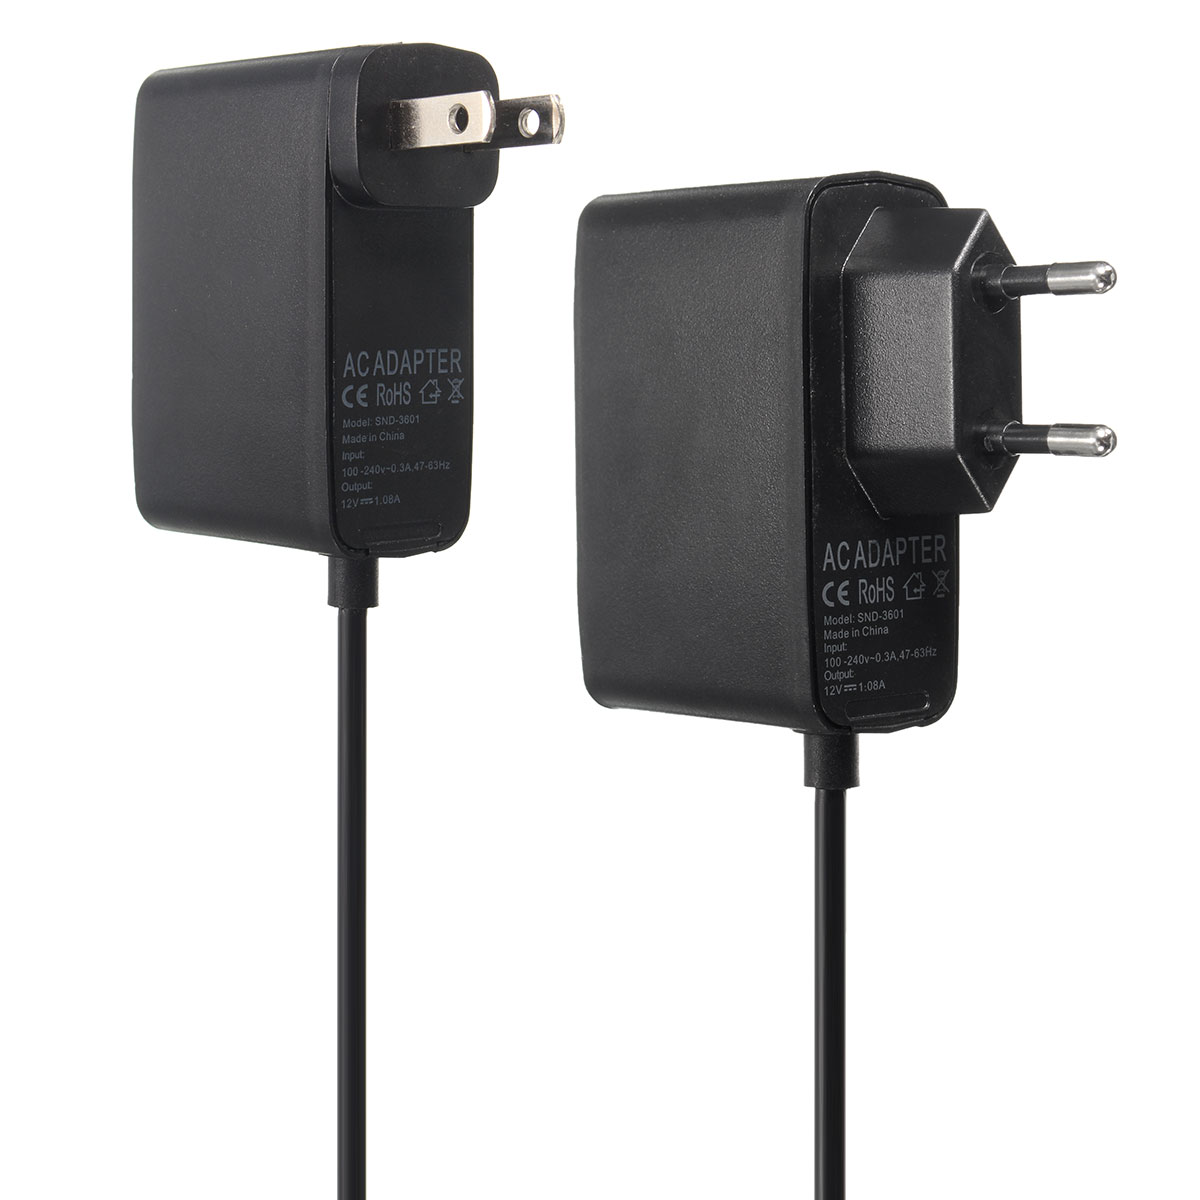 2.3m USB AC Adapter Power Supply Cable for Xbox 360 Kinect Sensor EU/US Plug 12